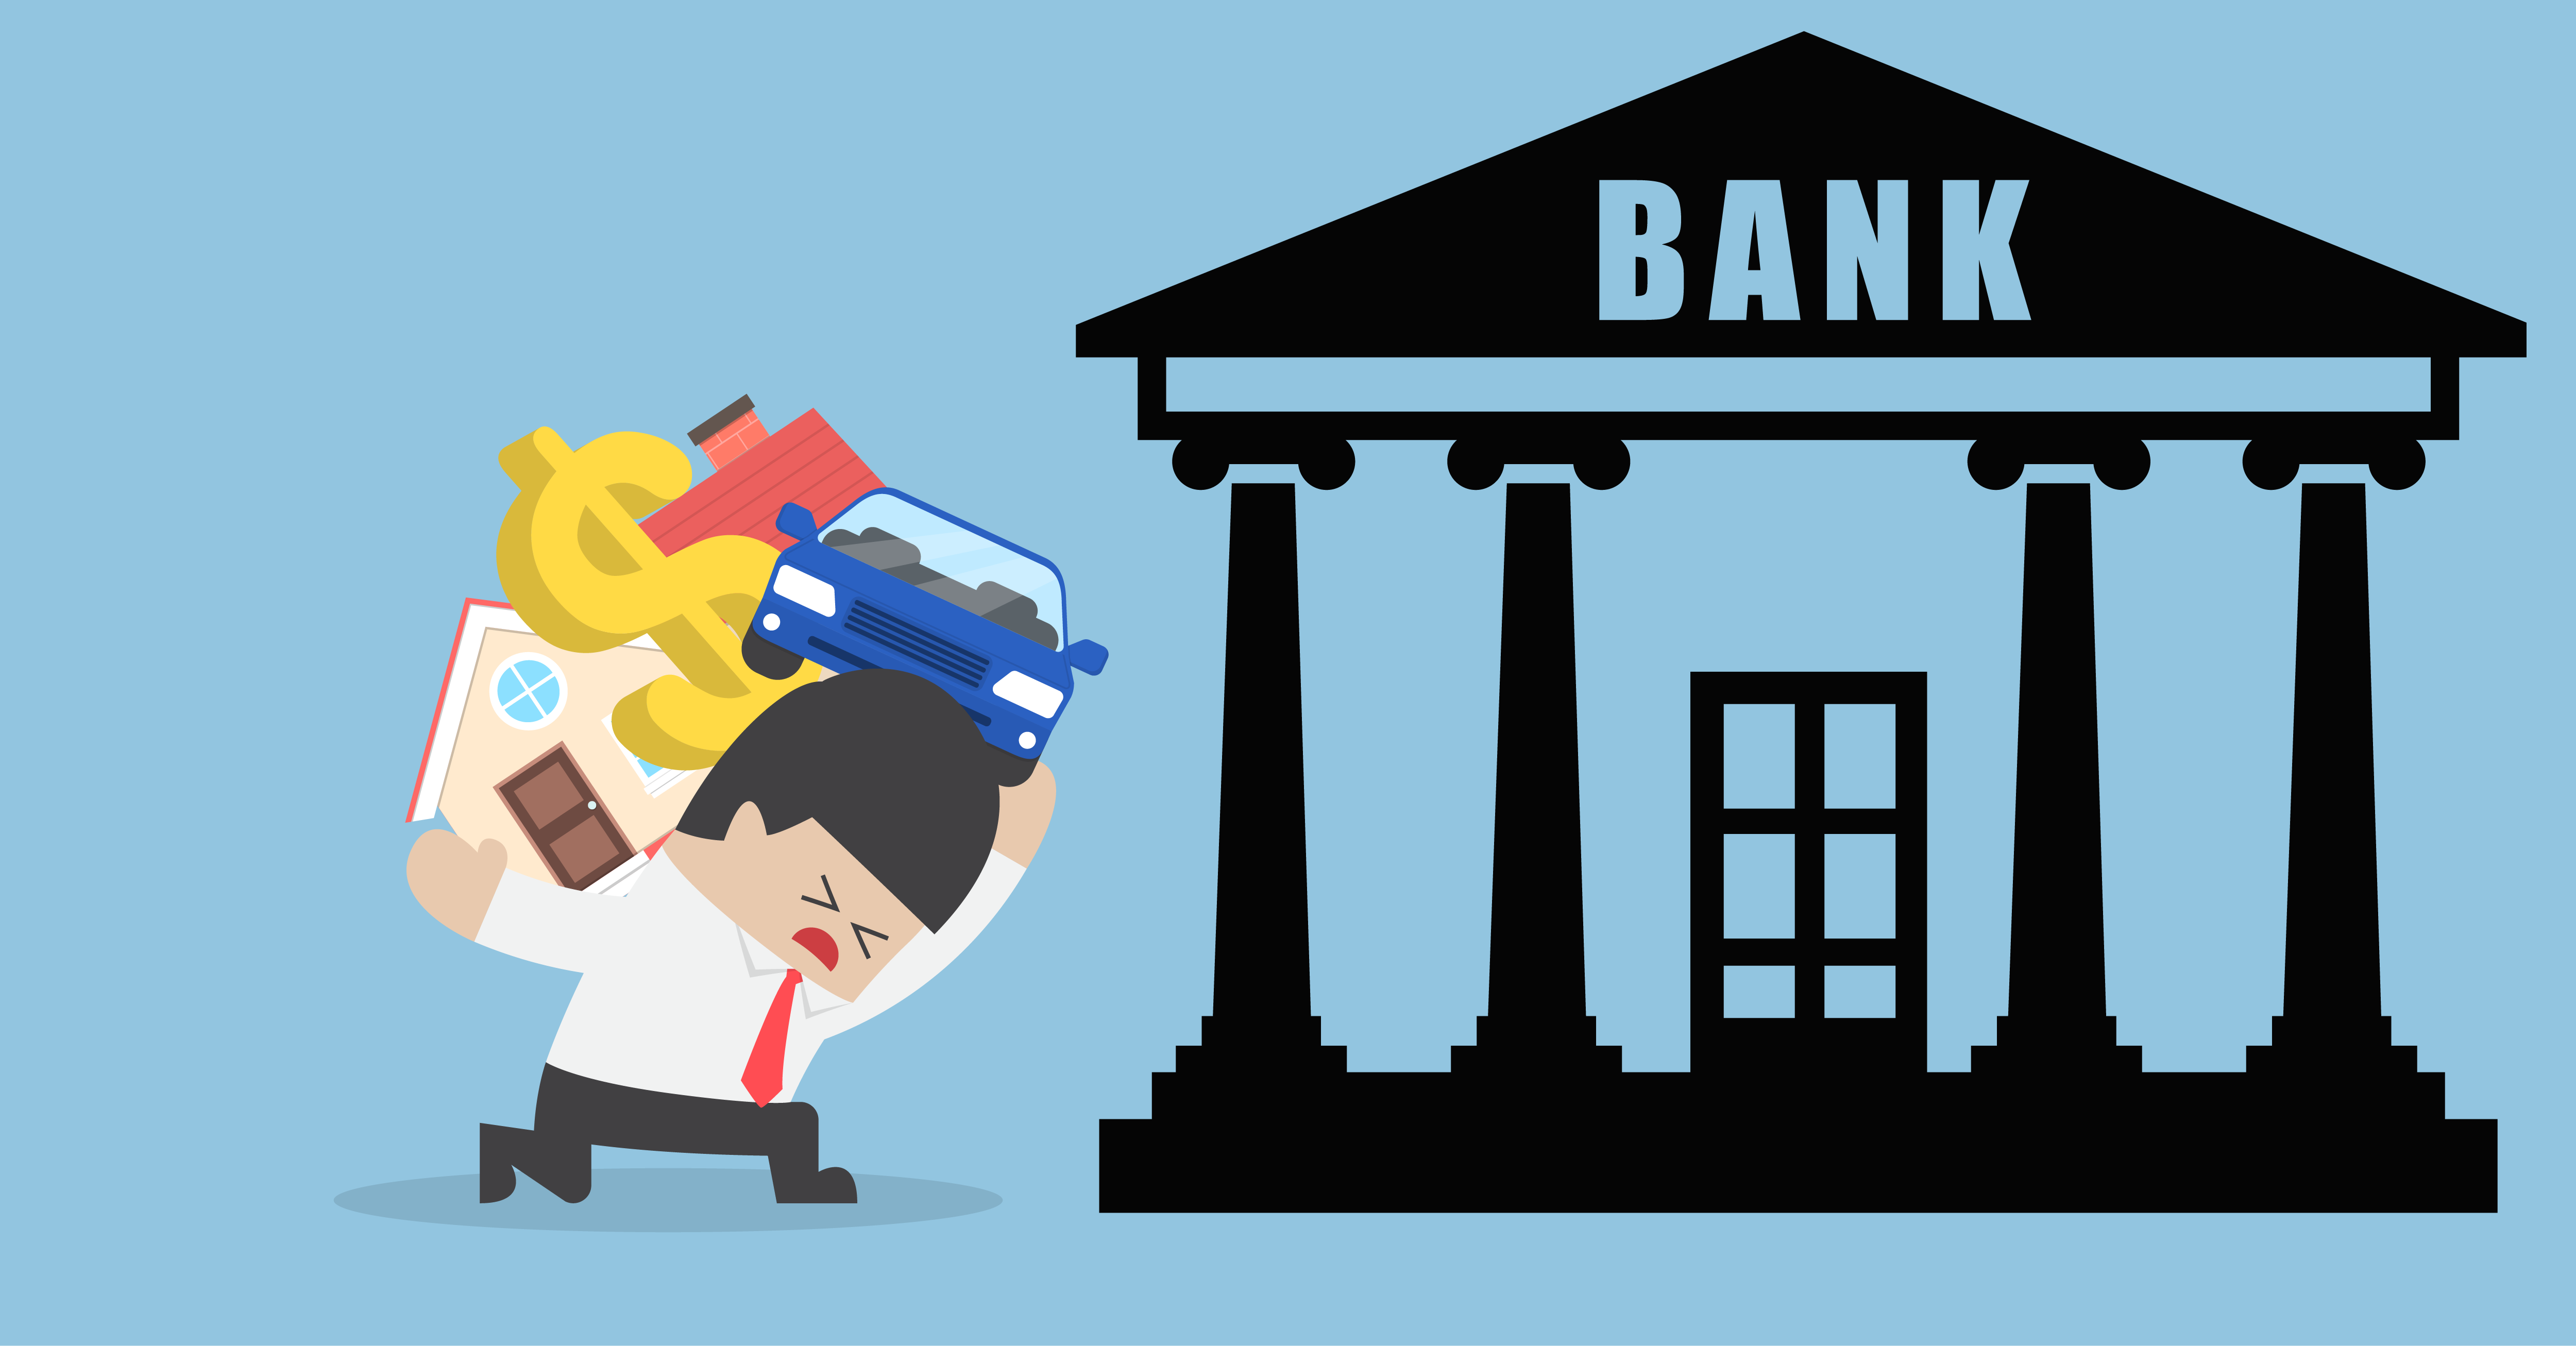 Bank debt. Банк иллюстрация. Банк картинка. Банк для презентации. Банк мультяшный.